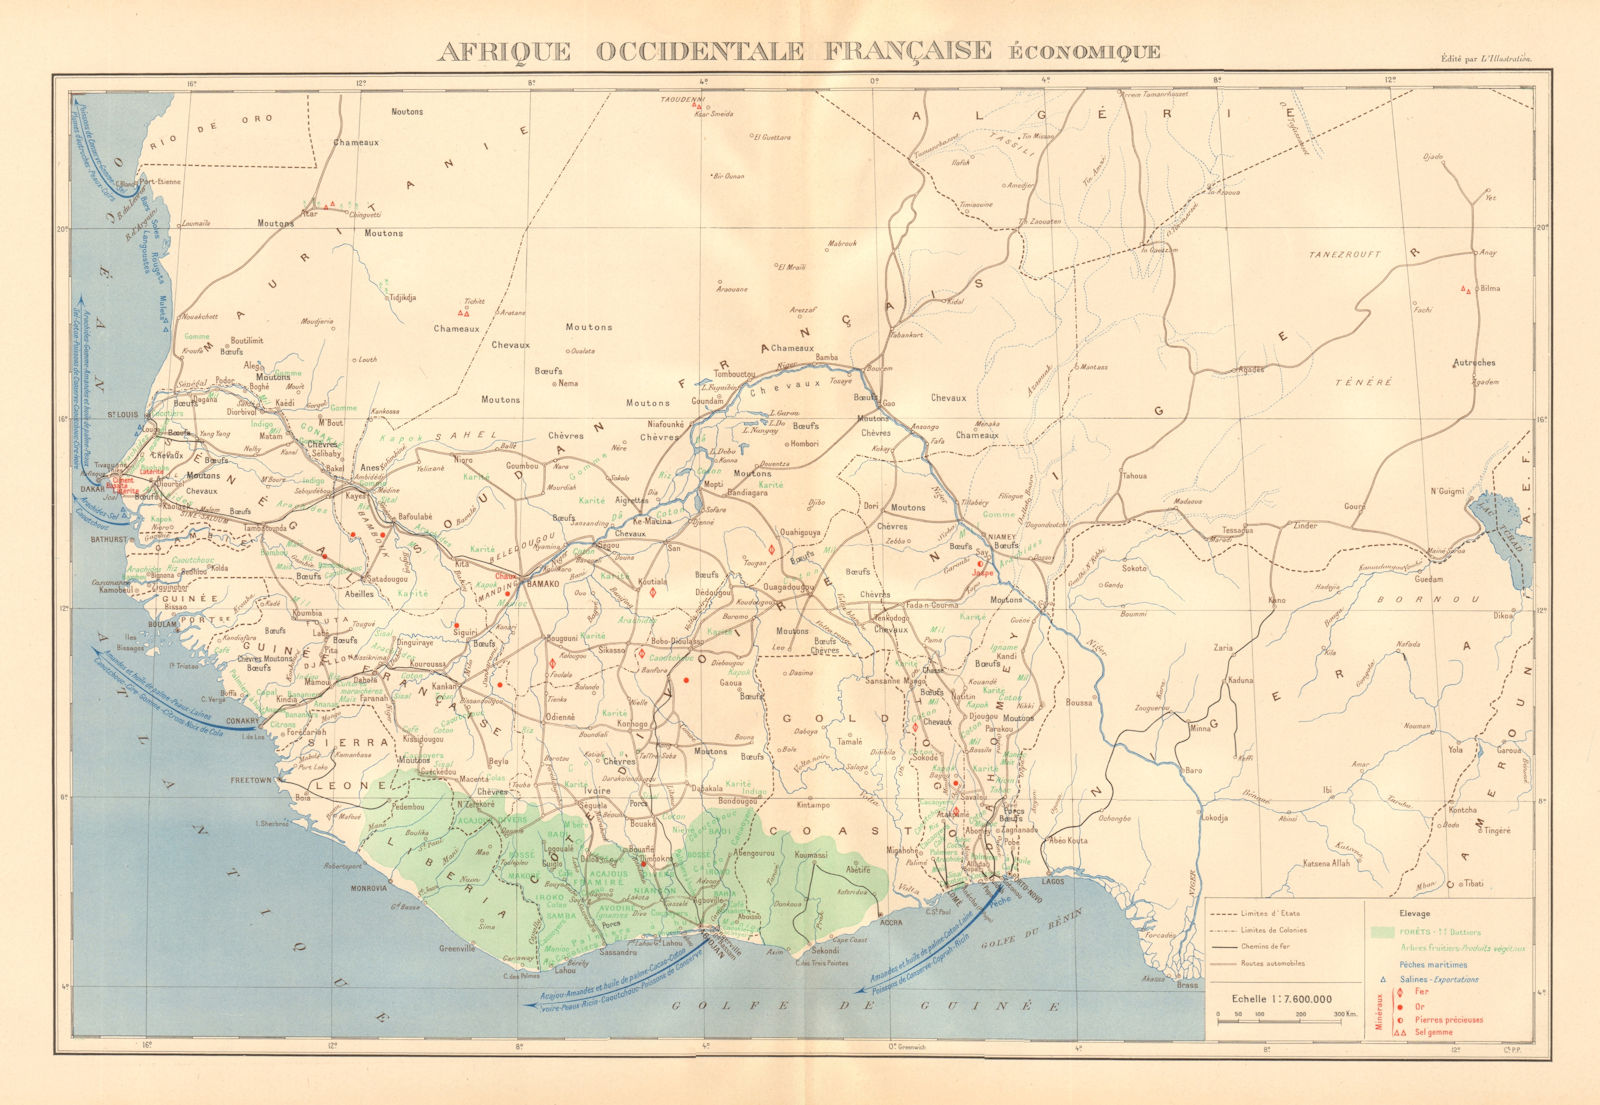 FRENCH WEST AFRICA RESOURCES. Afrique Occidentale Française economique 1938 map